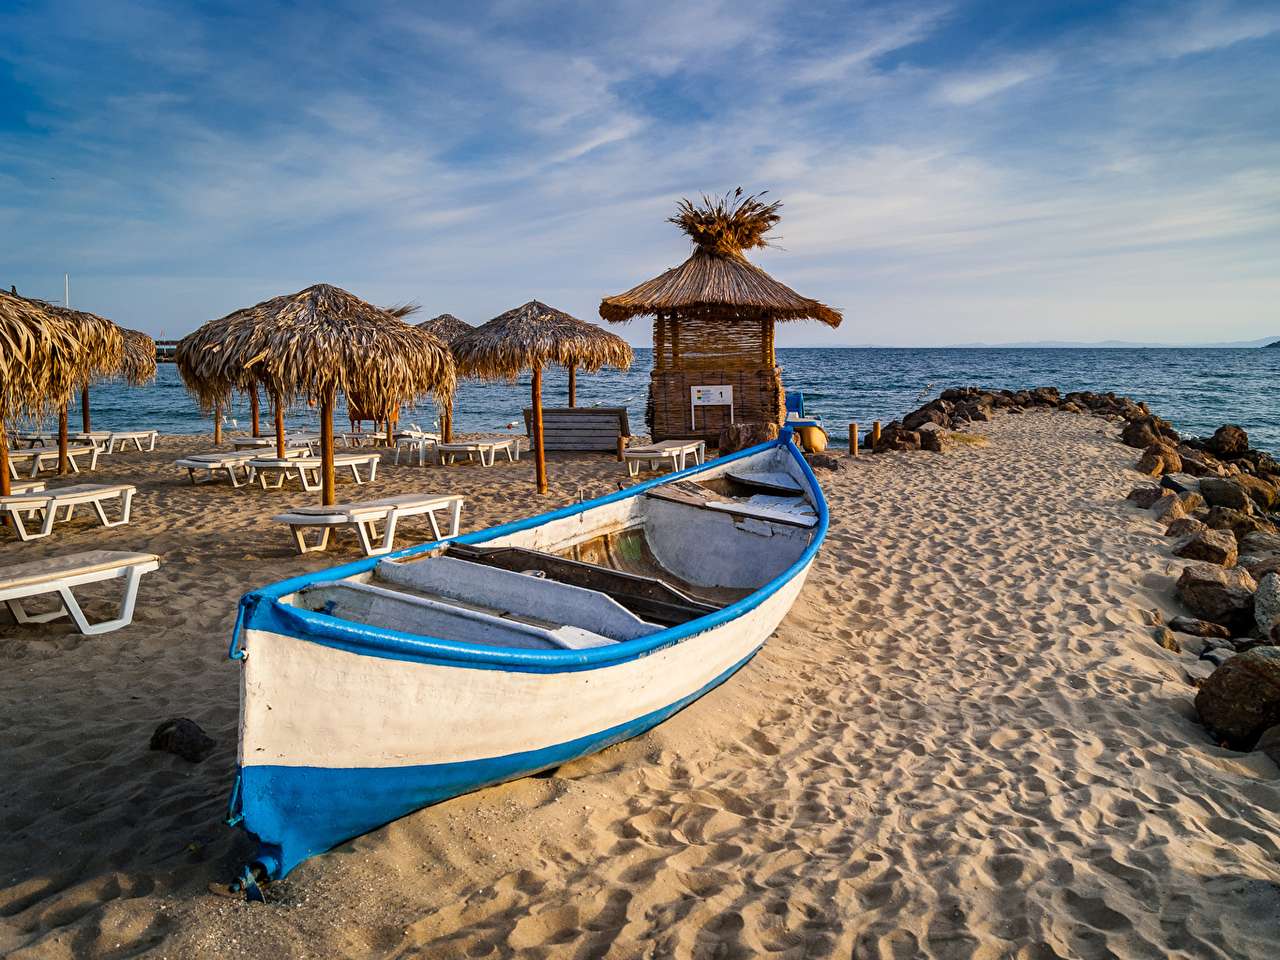 Bulharské pobřeží, okouzlující prázdninová atmosféra skládačky online